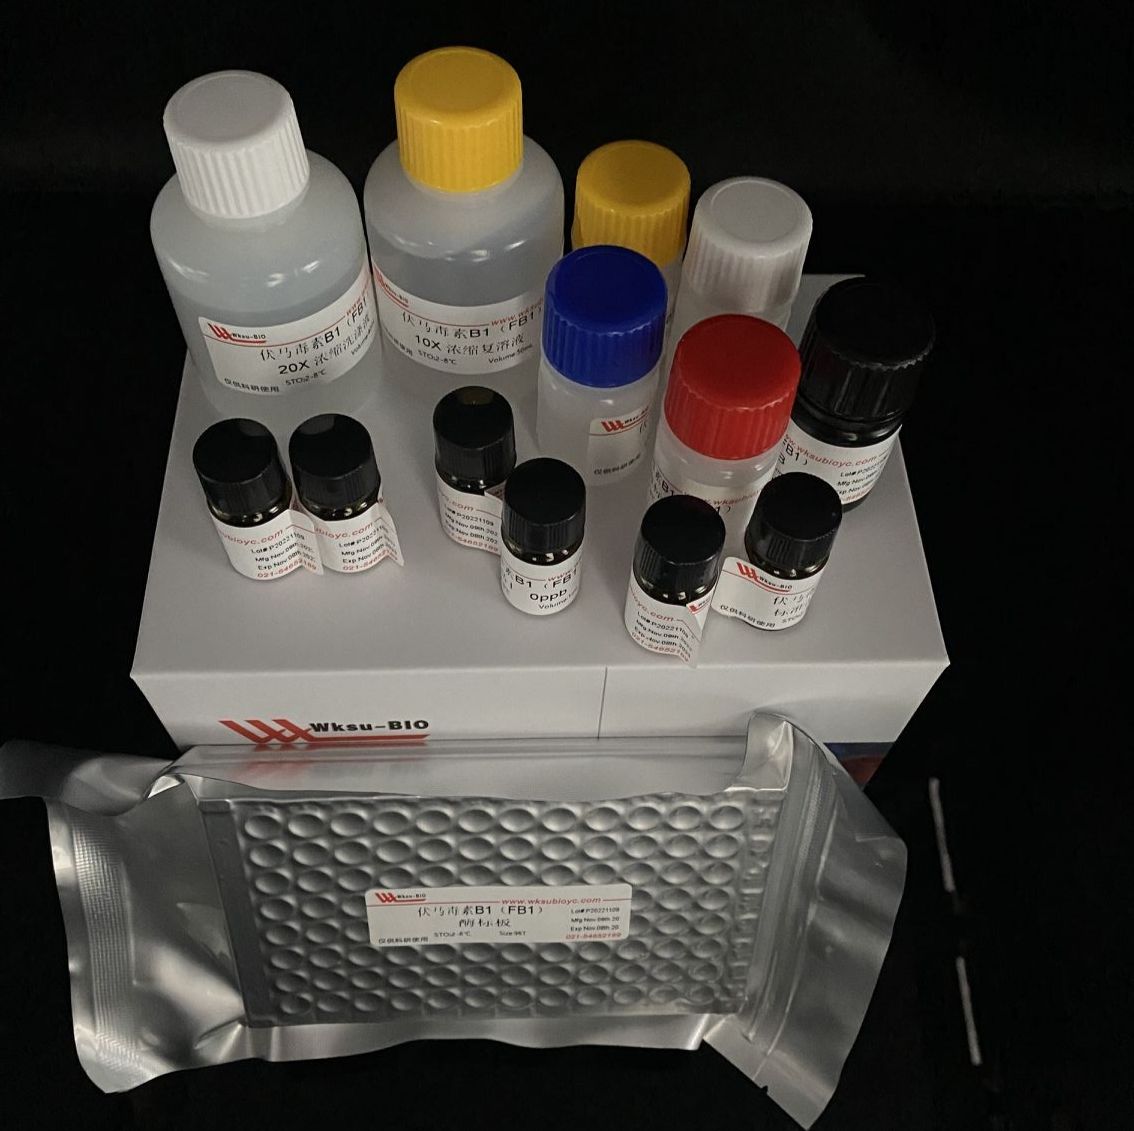 ADPG焦磷酸化酶/腺苷二磷酸葡萄糖焦磷酸化酶试剂盒